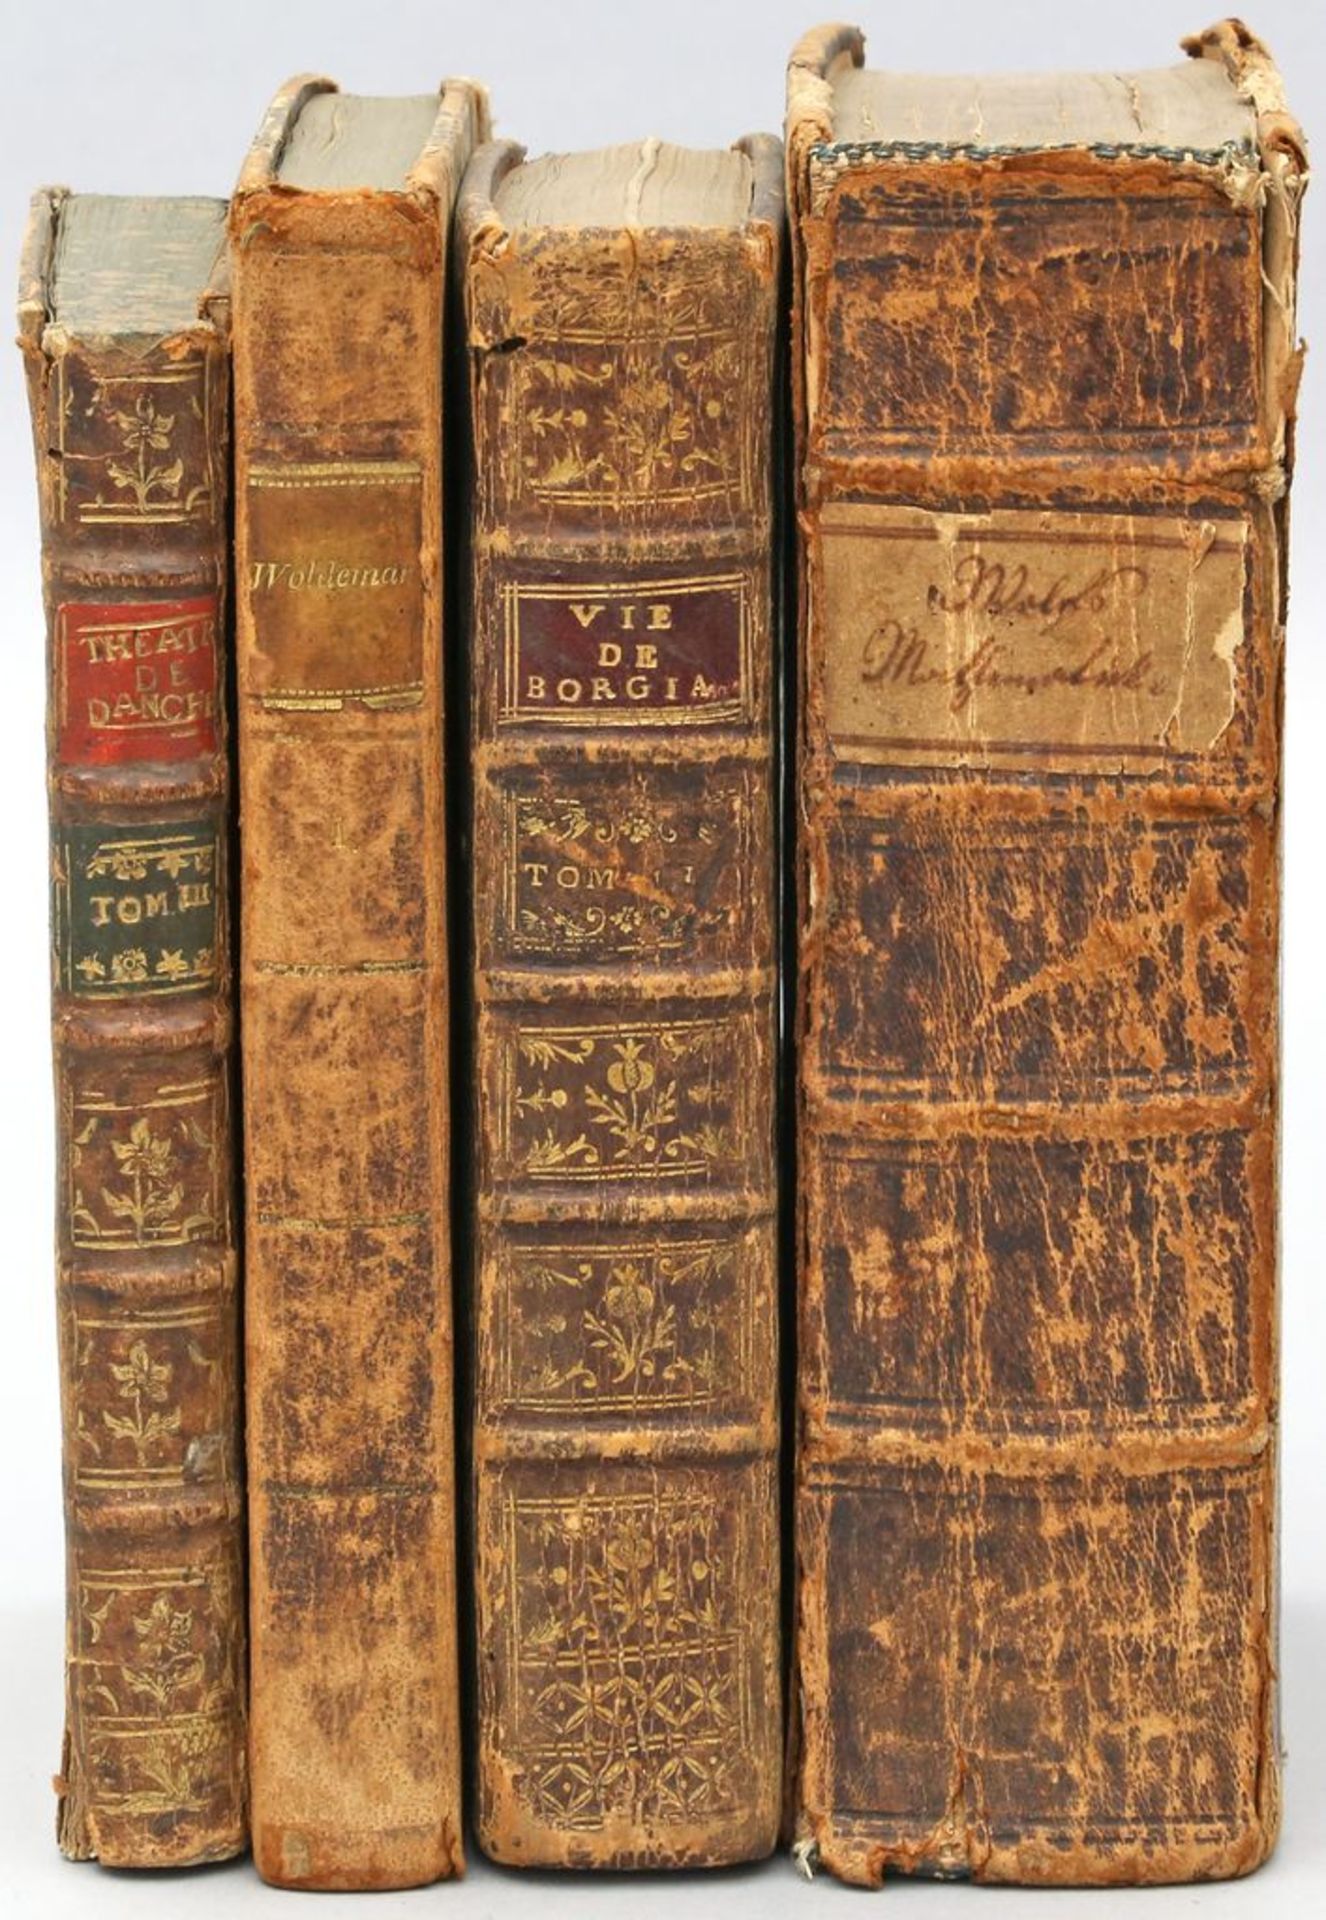 4 Bücher (17./18. Jh.): "La Vie de S. Francois" (1691), "Oeuvres Melees" (1751), "Wol